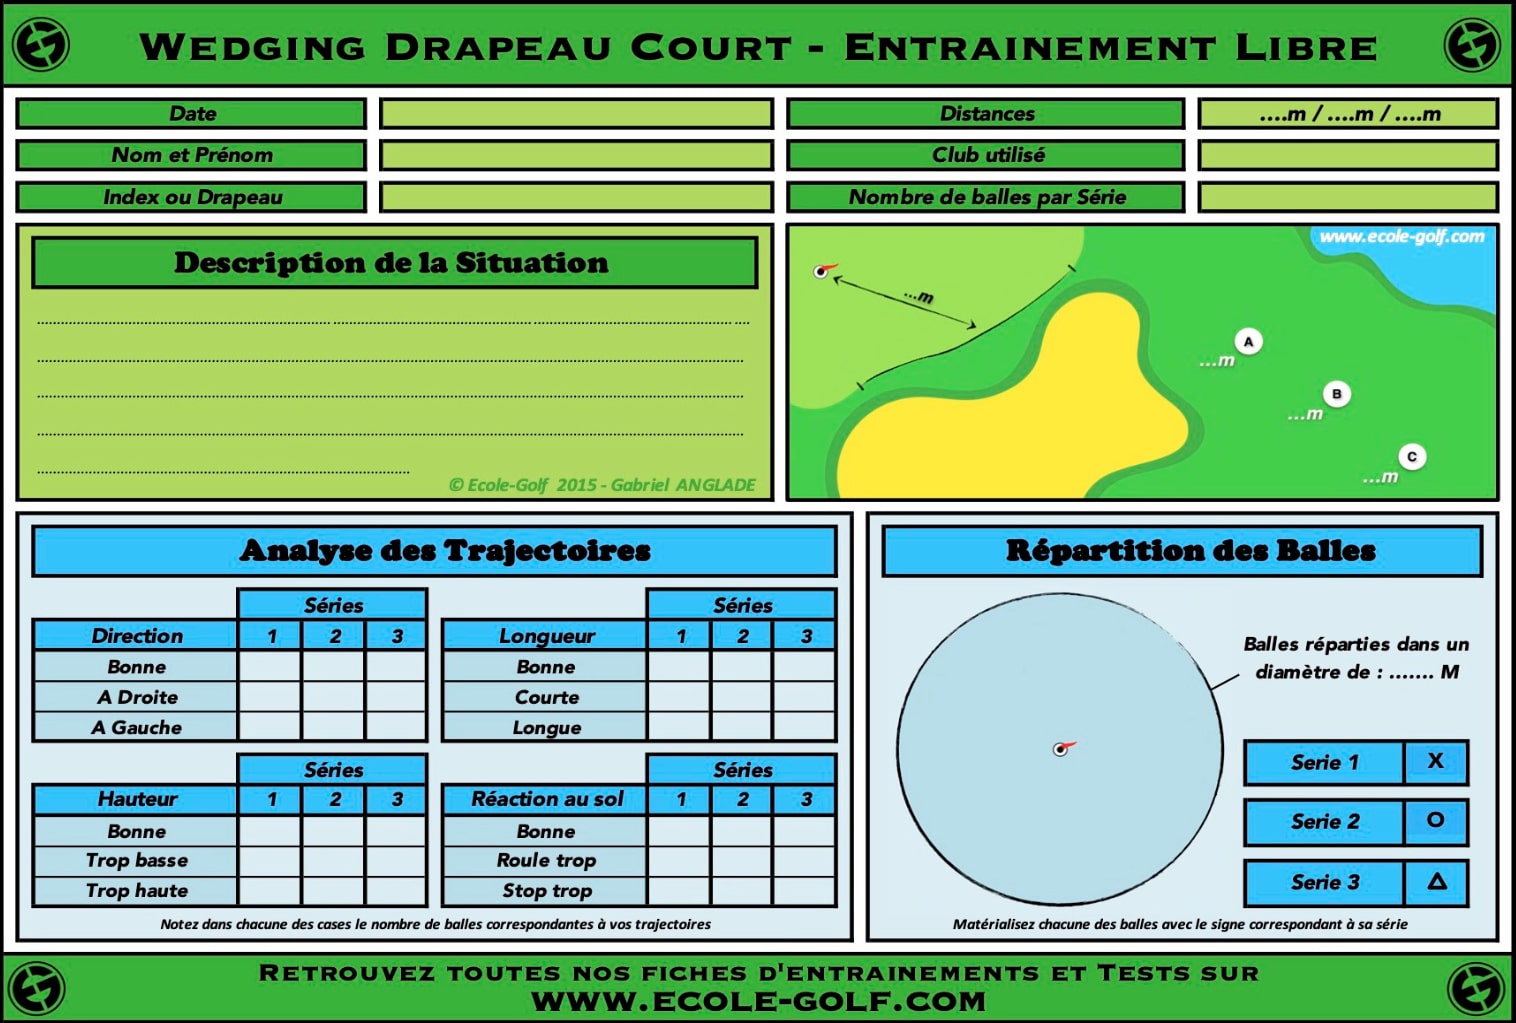 Wedging Drapeau Court - Entrainement Libre